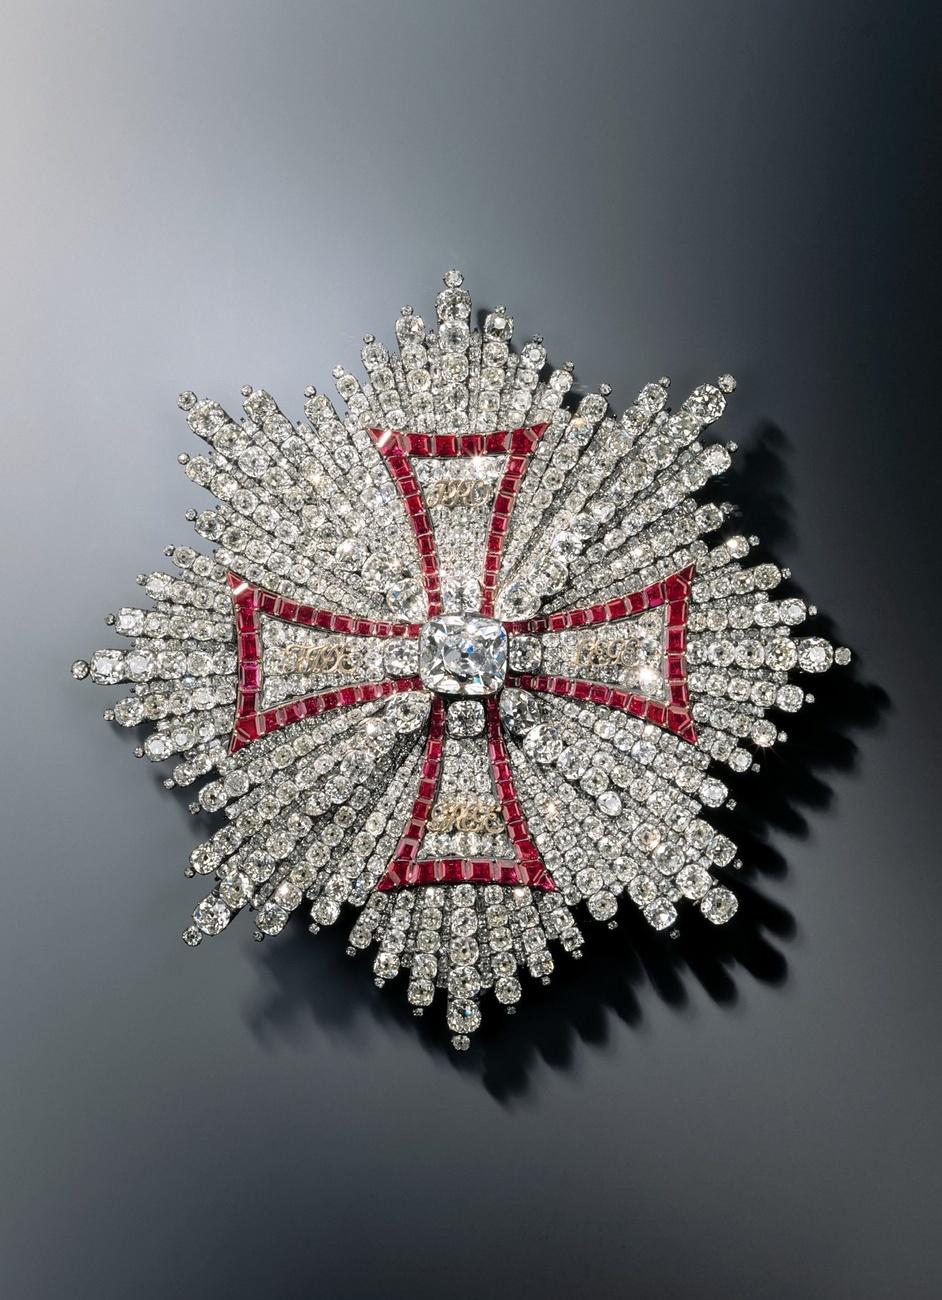 Une étoile pectorale de l'ordre polonais de l'aigle blanc dérobée dans la salle du trésor de Dresde en 2019. [Keystone - DPA/Grünes Gewölbe]